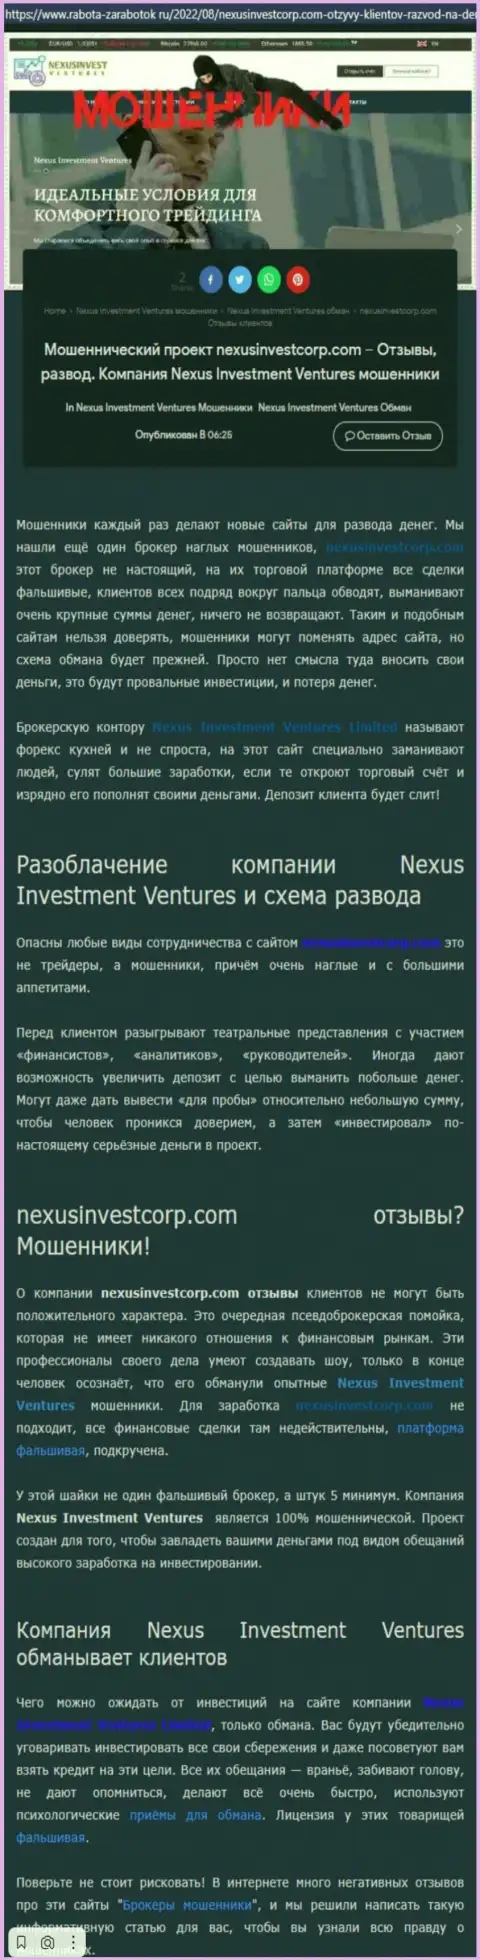 Если не намерены стать еще одной жертвой Nexus Invest, бегите от них подальше (обзор)